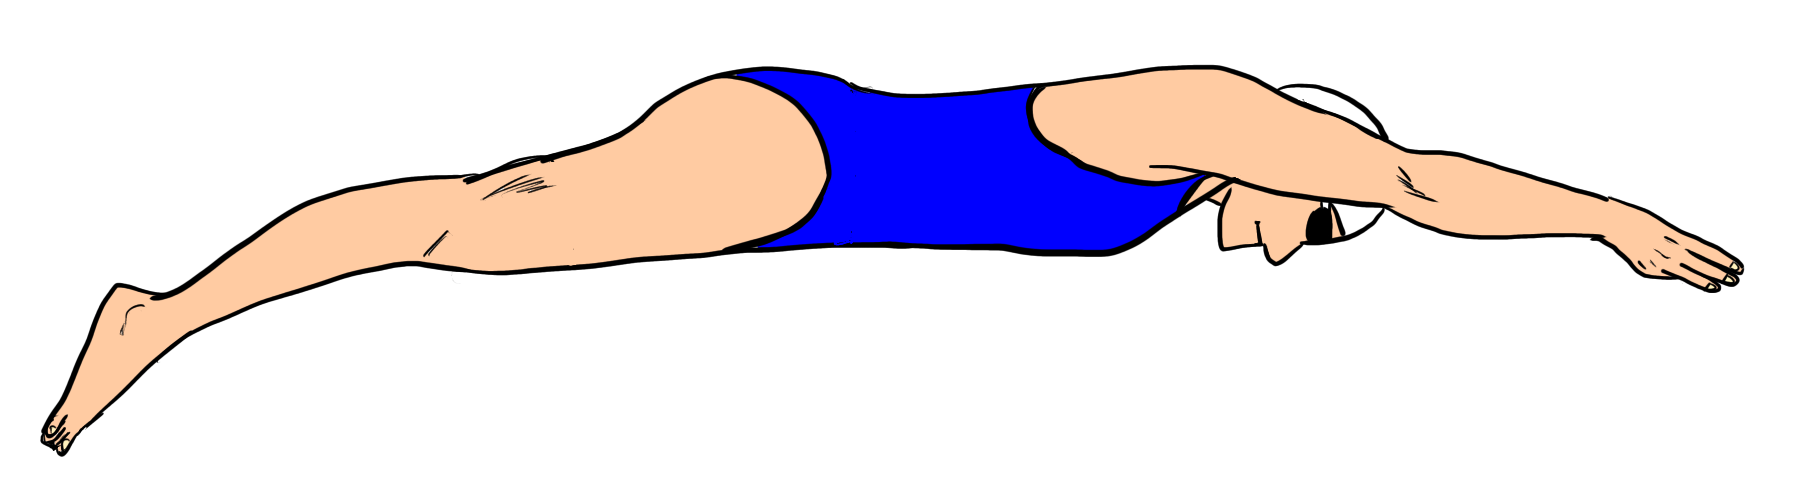 平泳ぎの伸びの姿勢